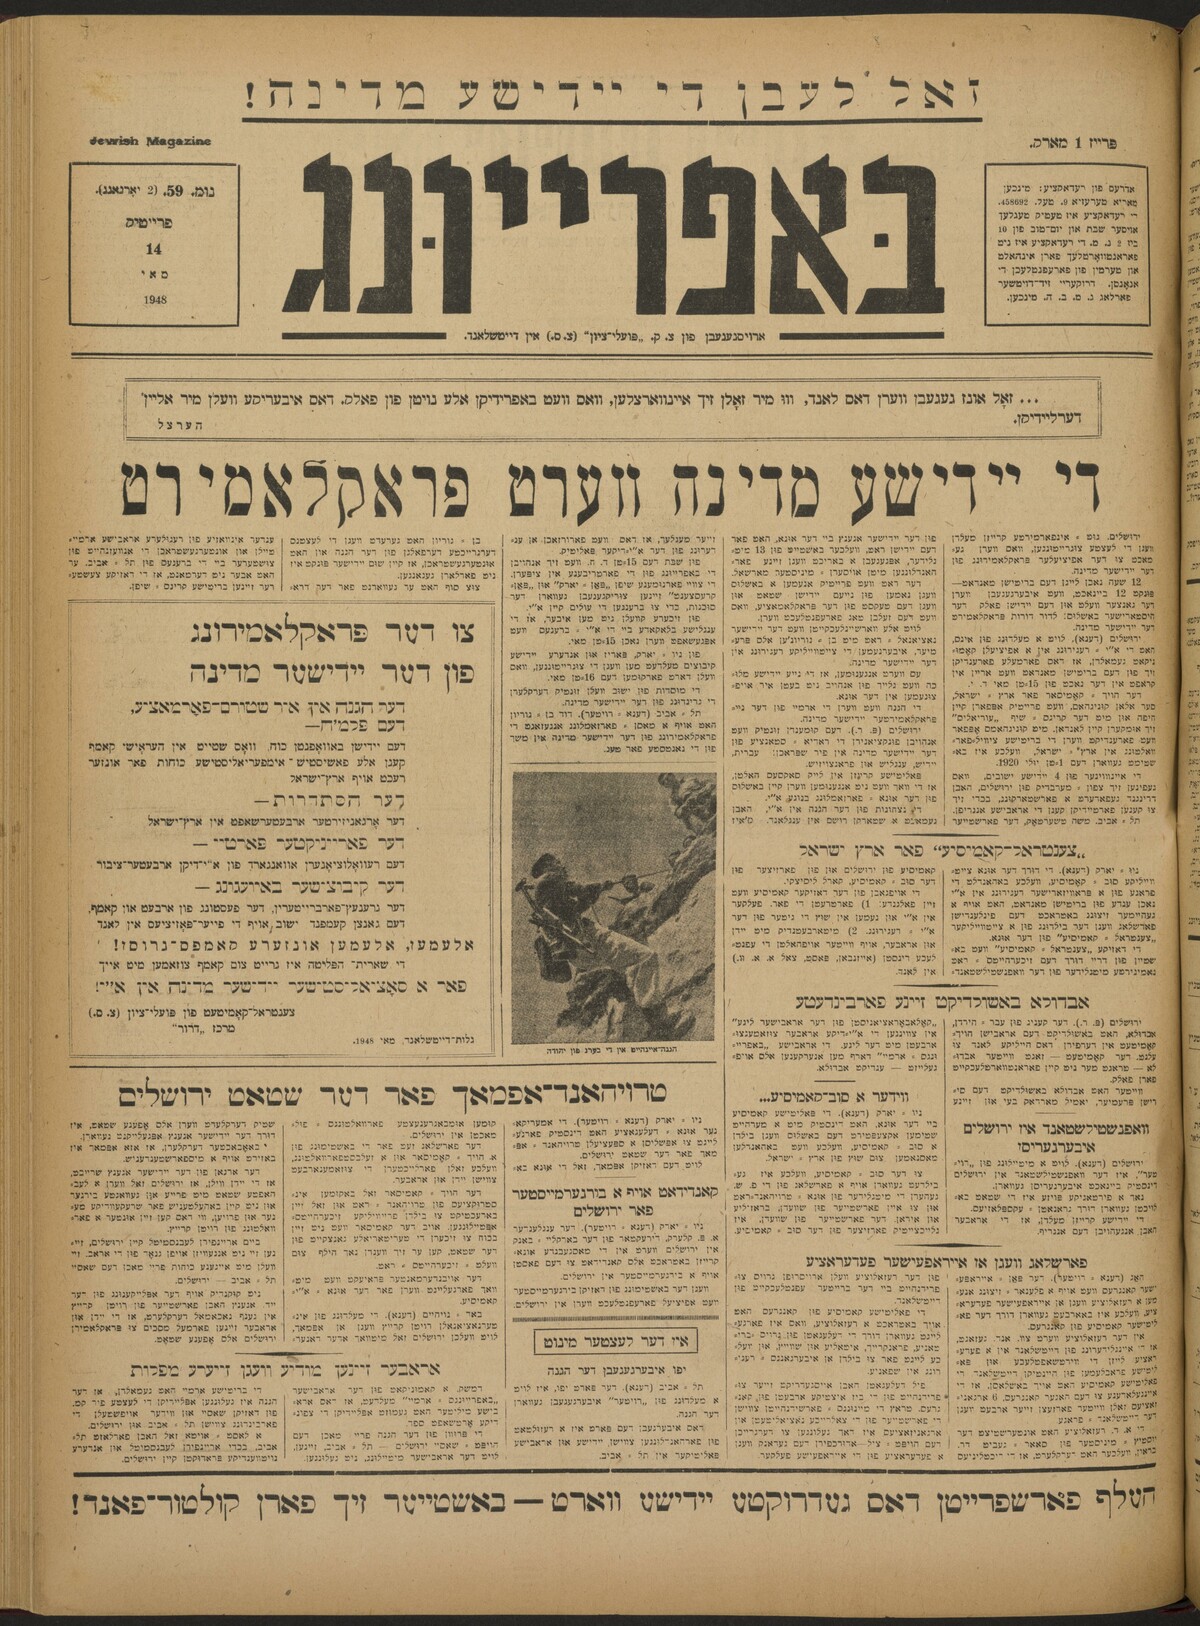 Zeitung der Displaced Persons, Bafrayung, München, 1948